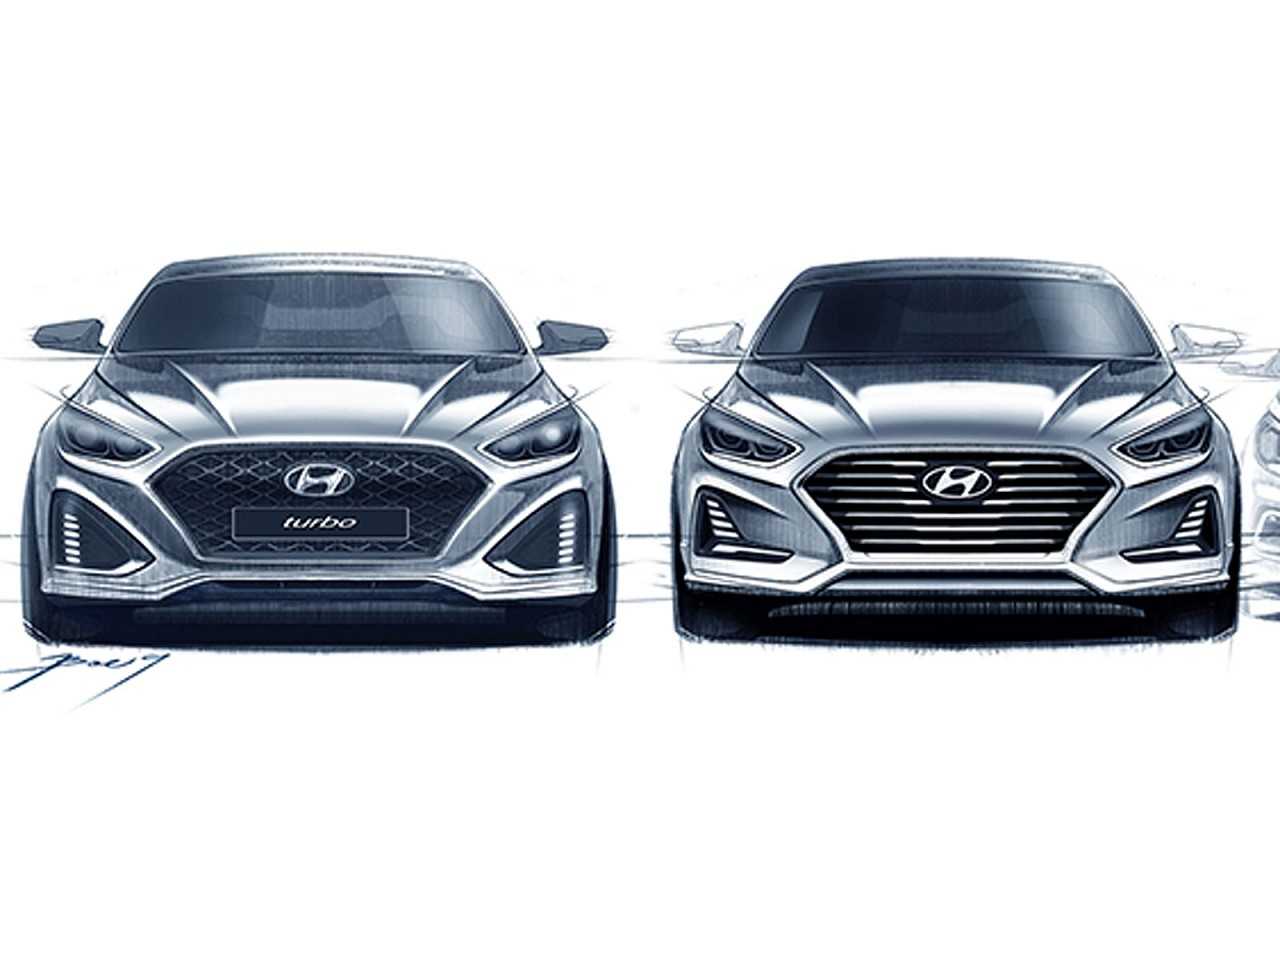 Teaser do novo Hyundai Sonata 2017